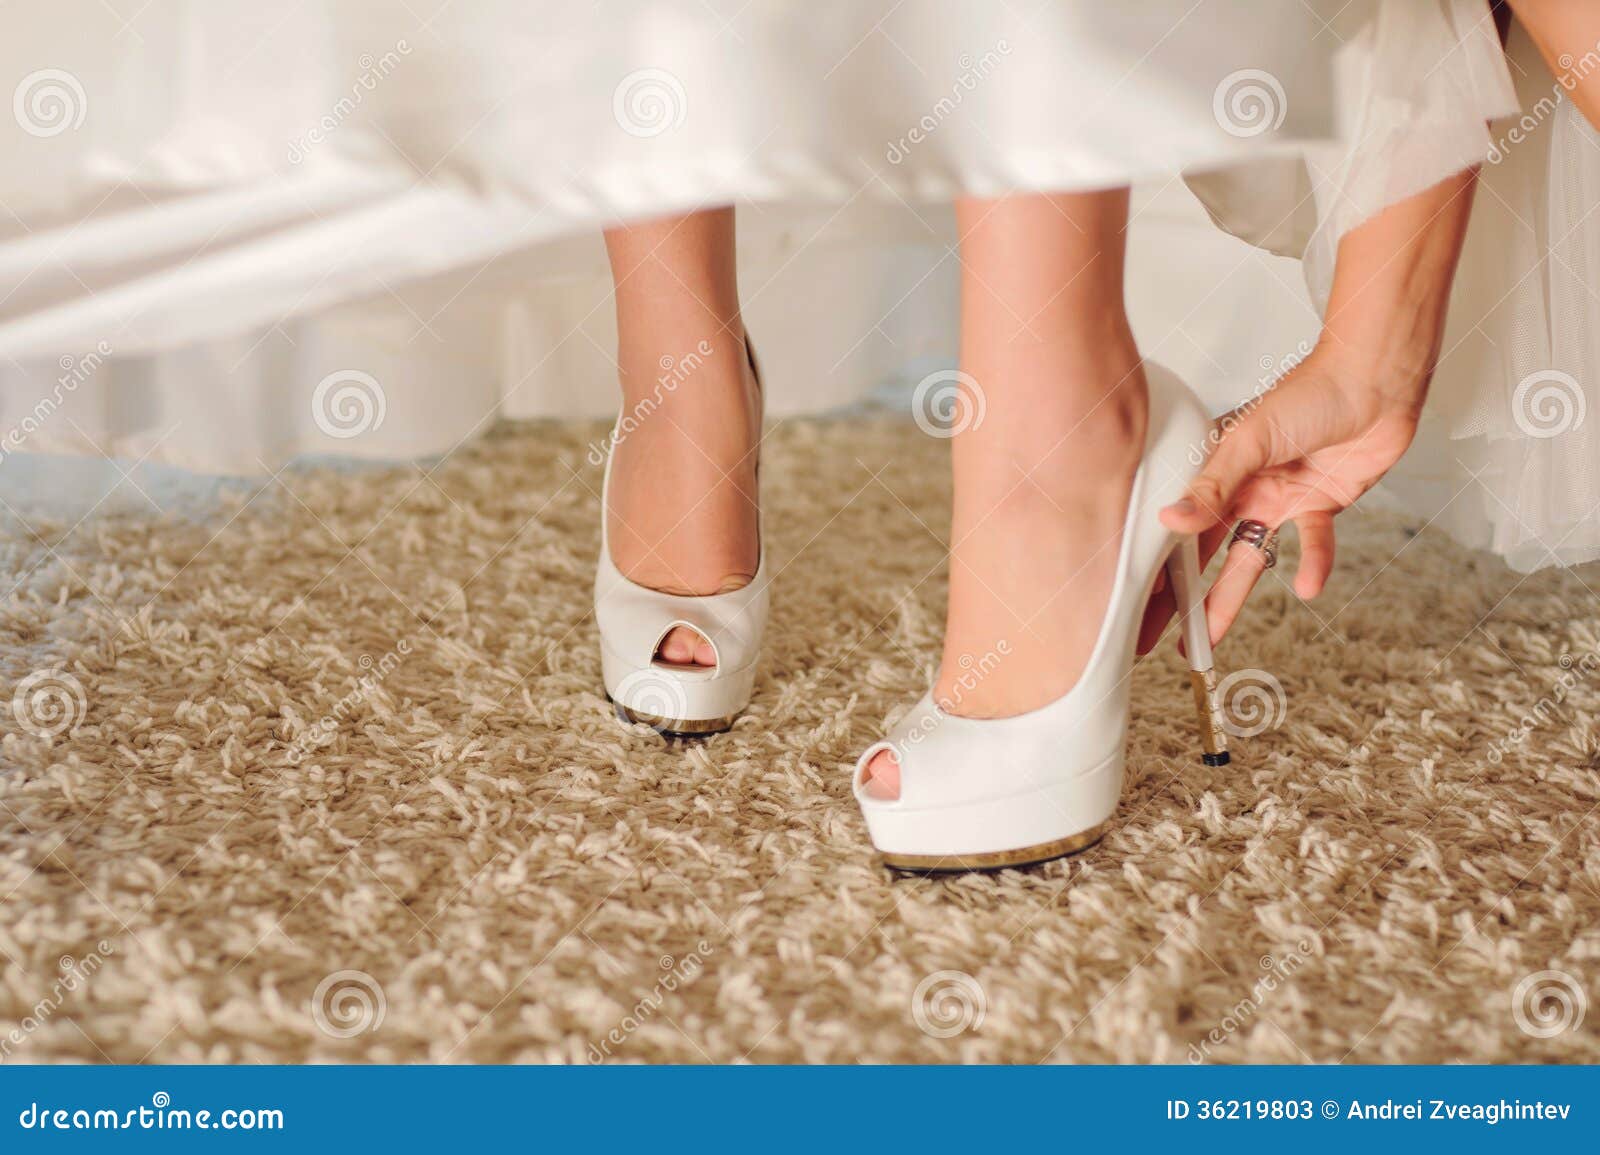 zapatos blancos altos para novia